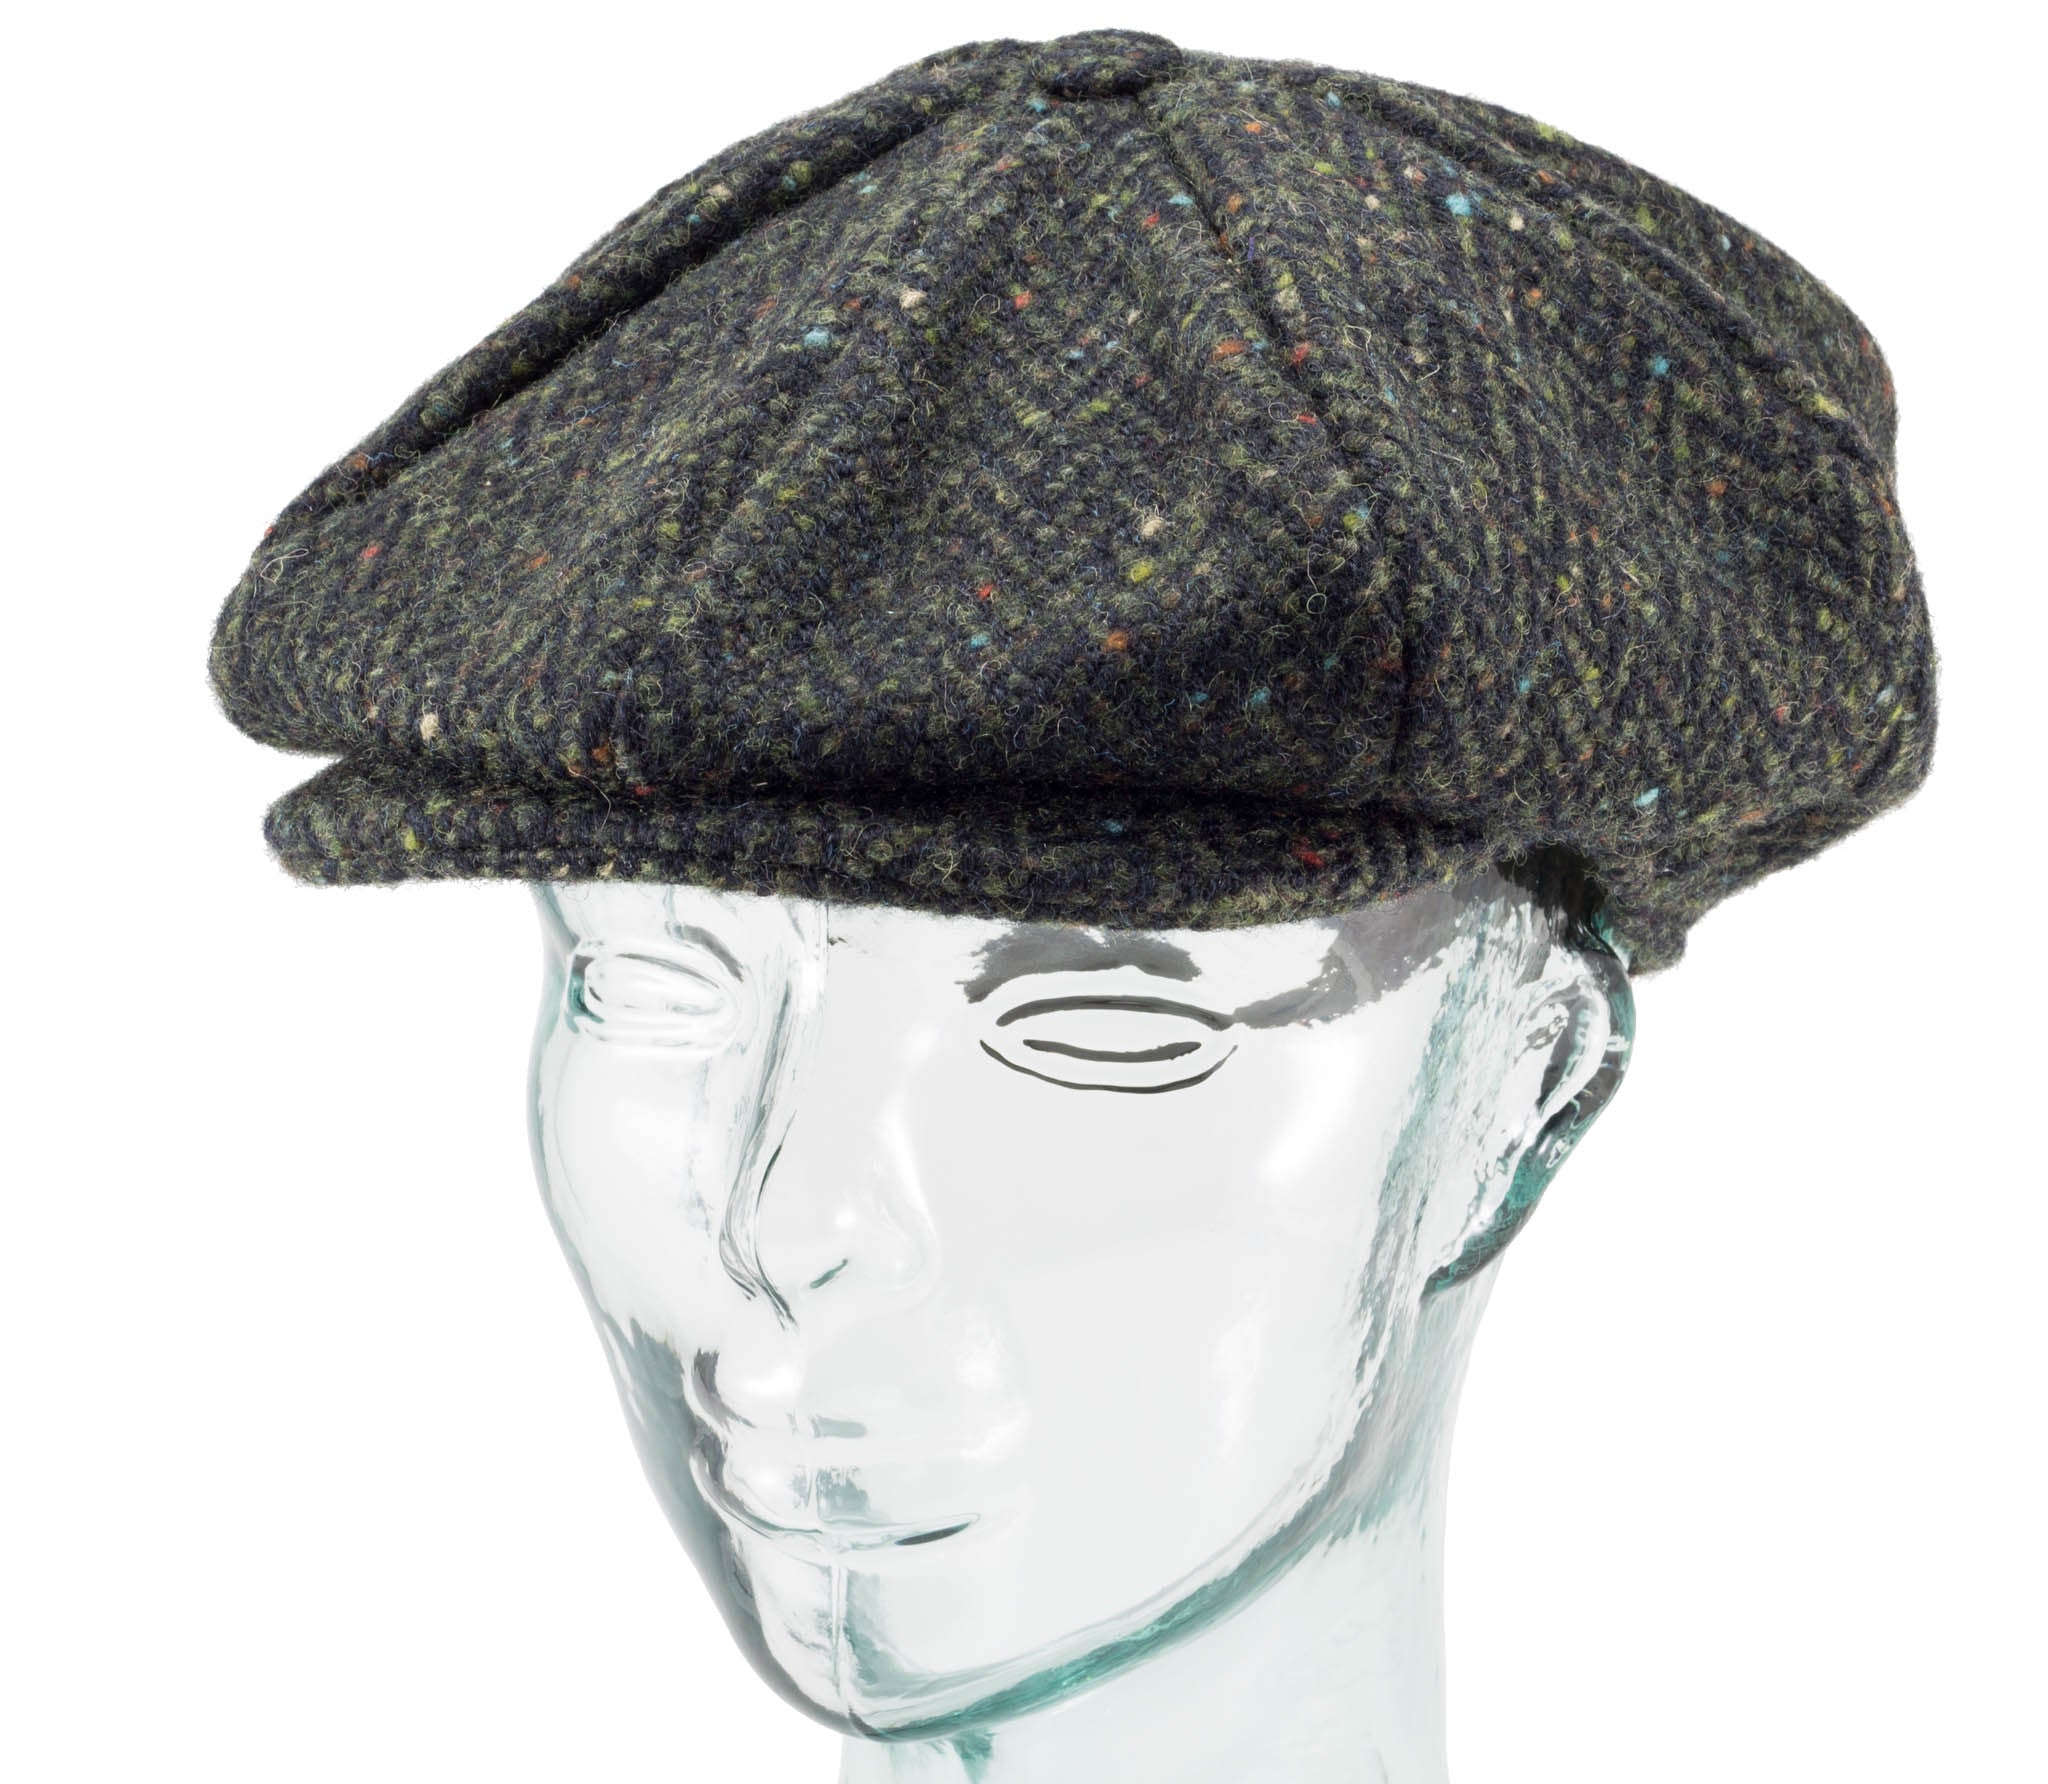 Handwoven Tweed - Eight Piece Cap